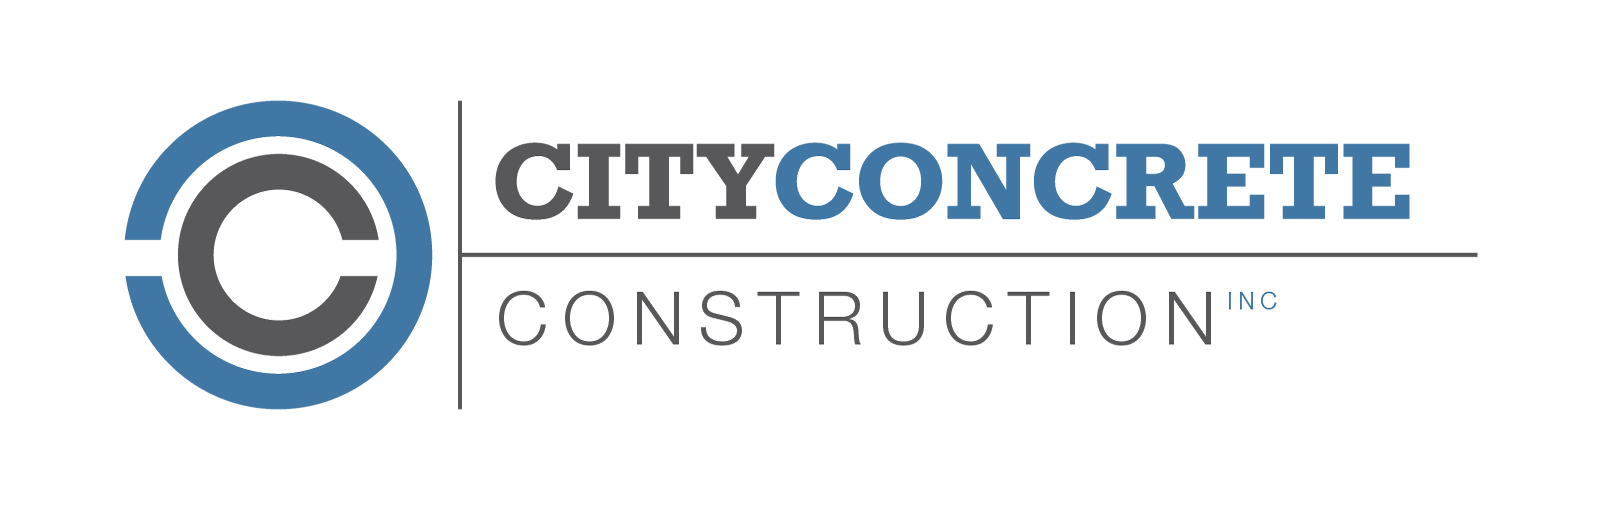 City Concrete Construction Inc.'s logo